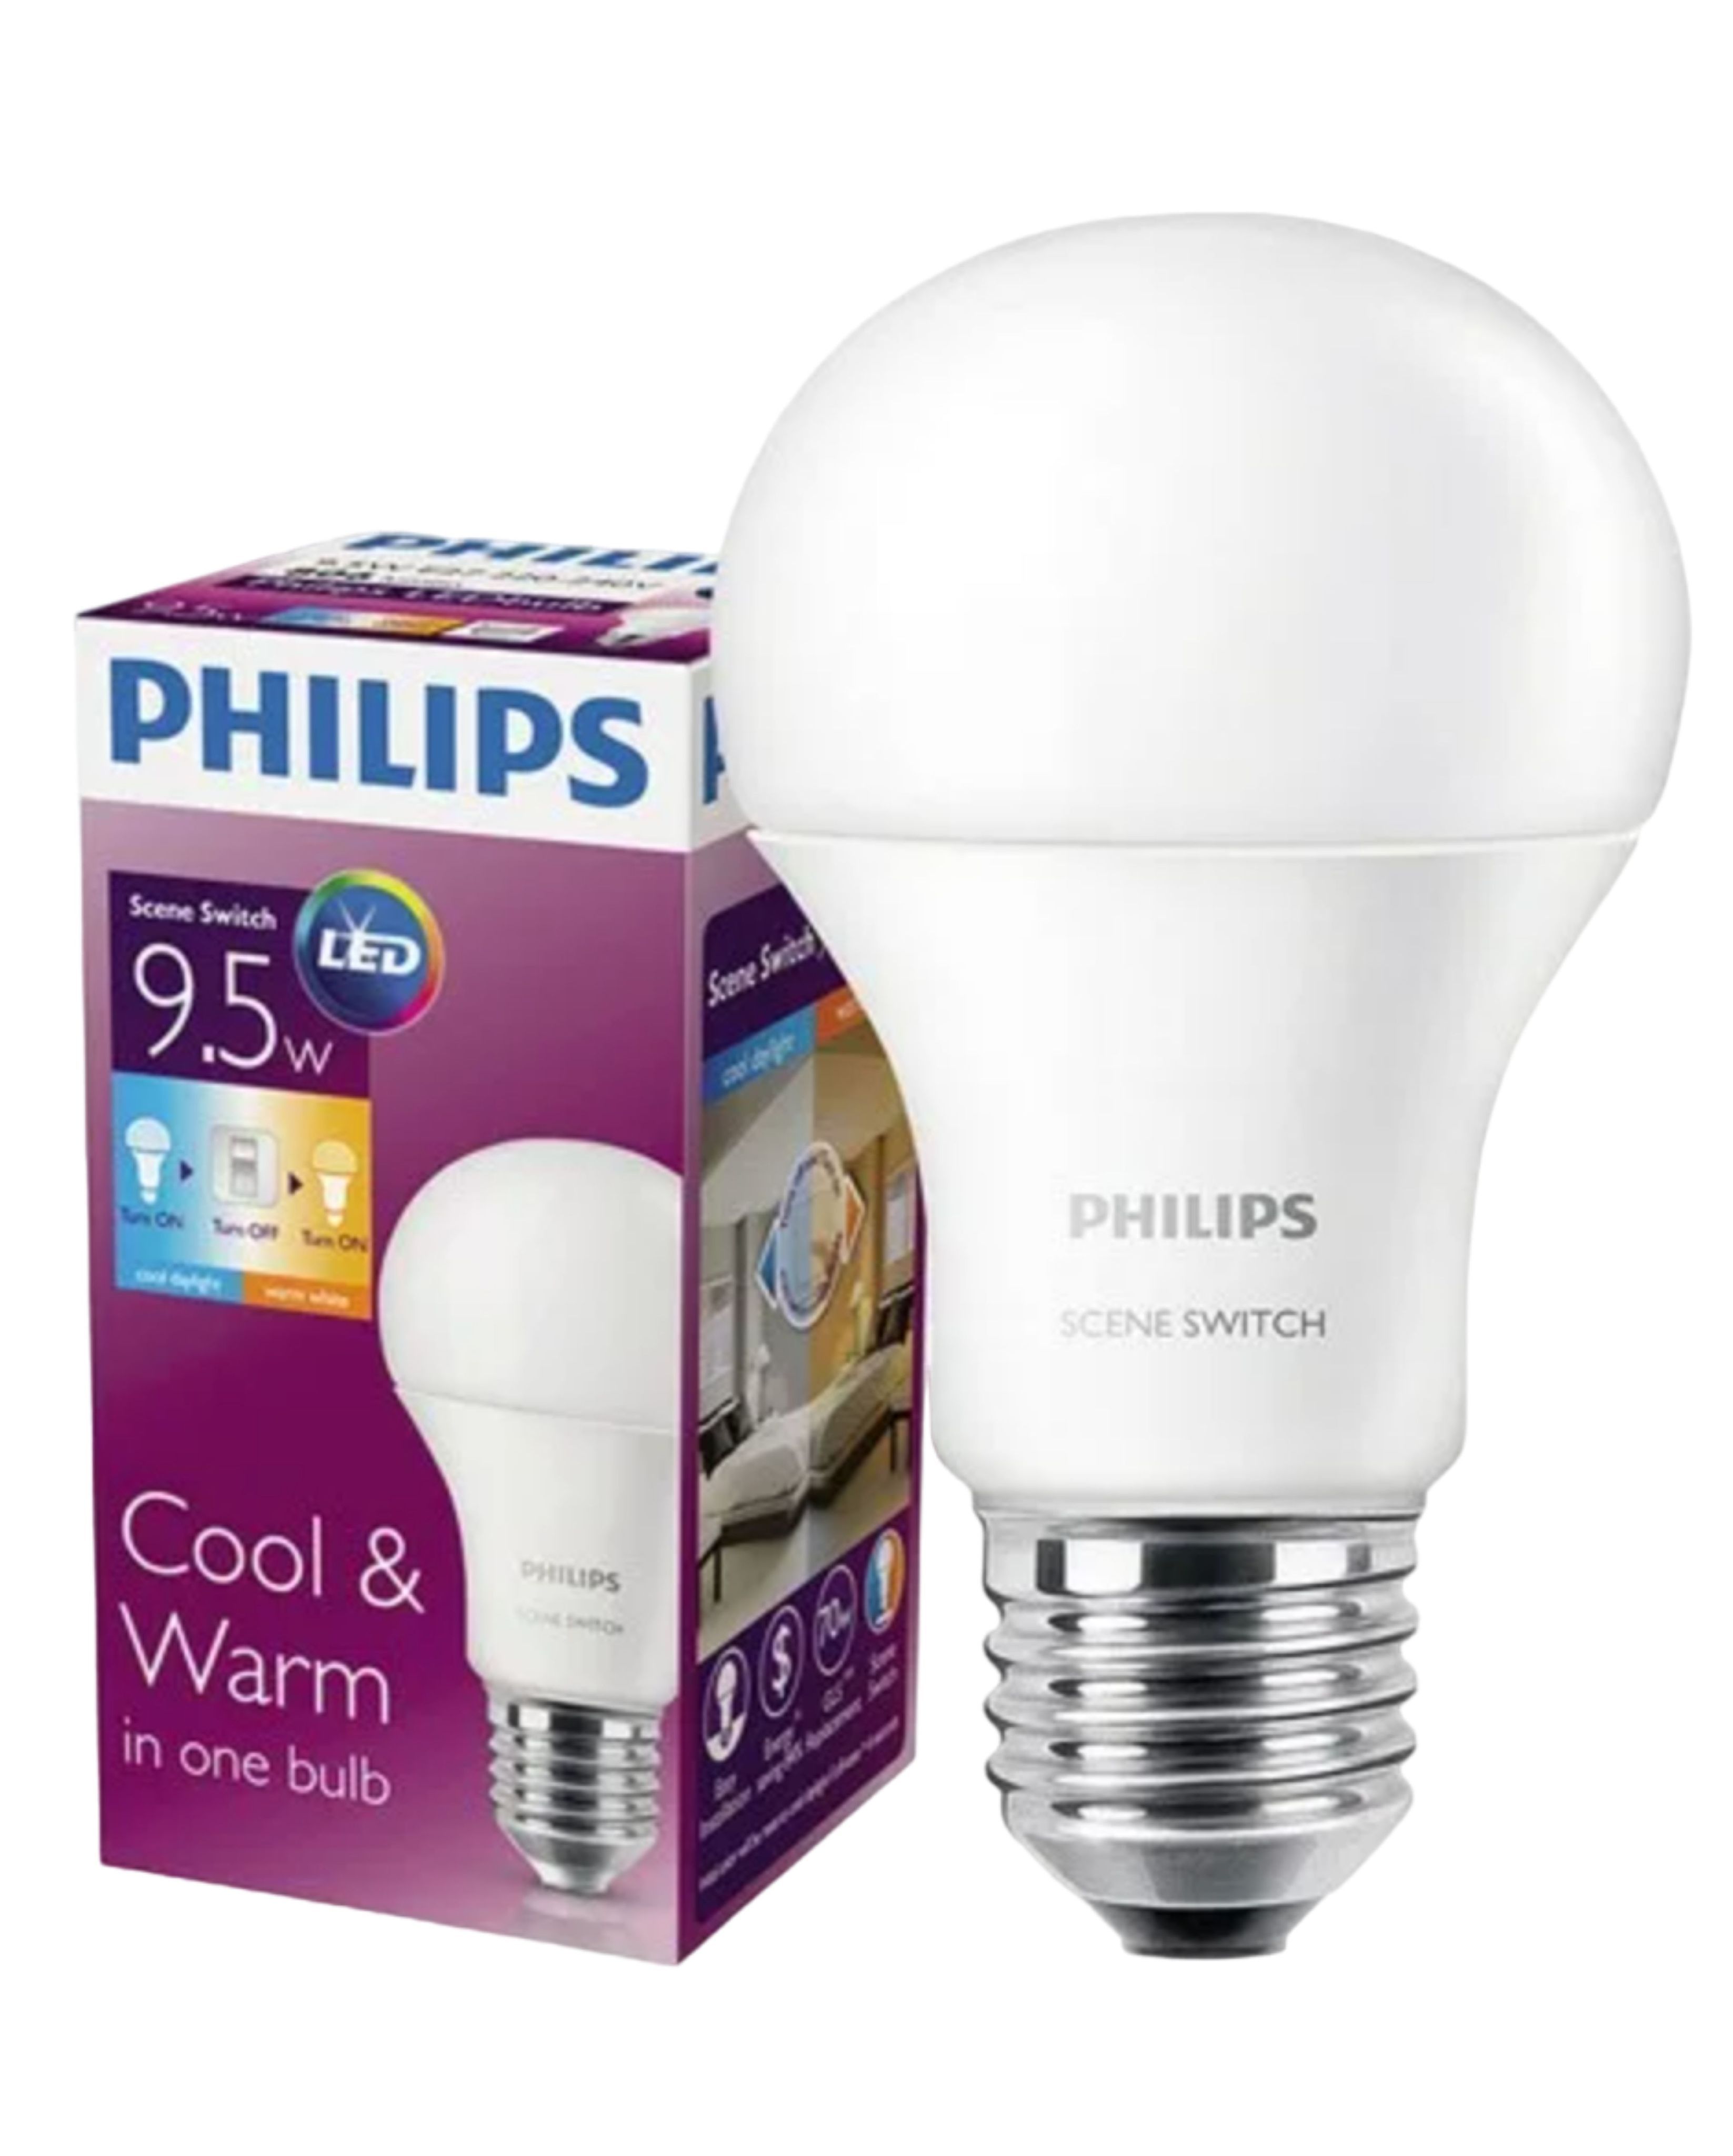 Купить лампочки philips. Лампа светодиодная Филипс е27. Led Scene Switch a60 9.5Вт e27. Светодиодная лампа Philips e27. Лампа светодиодная Philips led SCENESWITCH, e27, a60, 9вт.